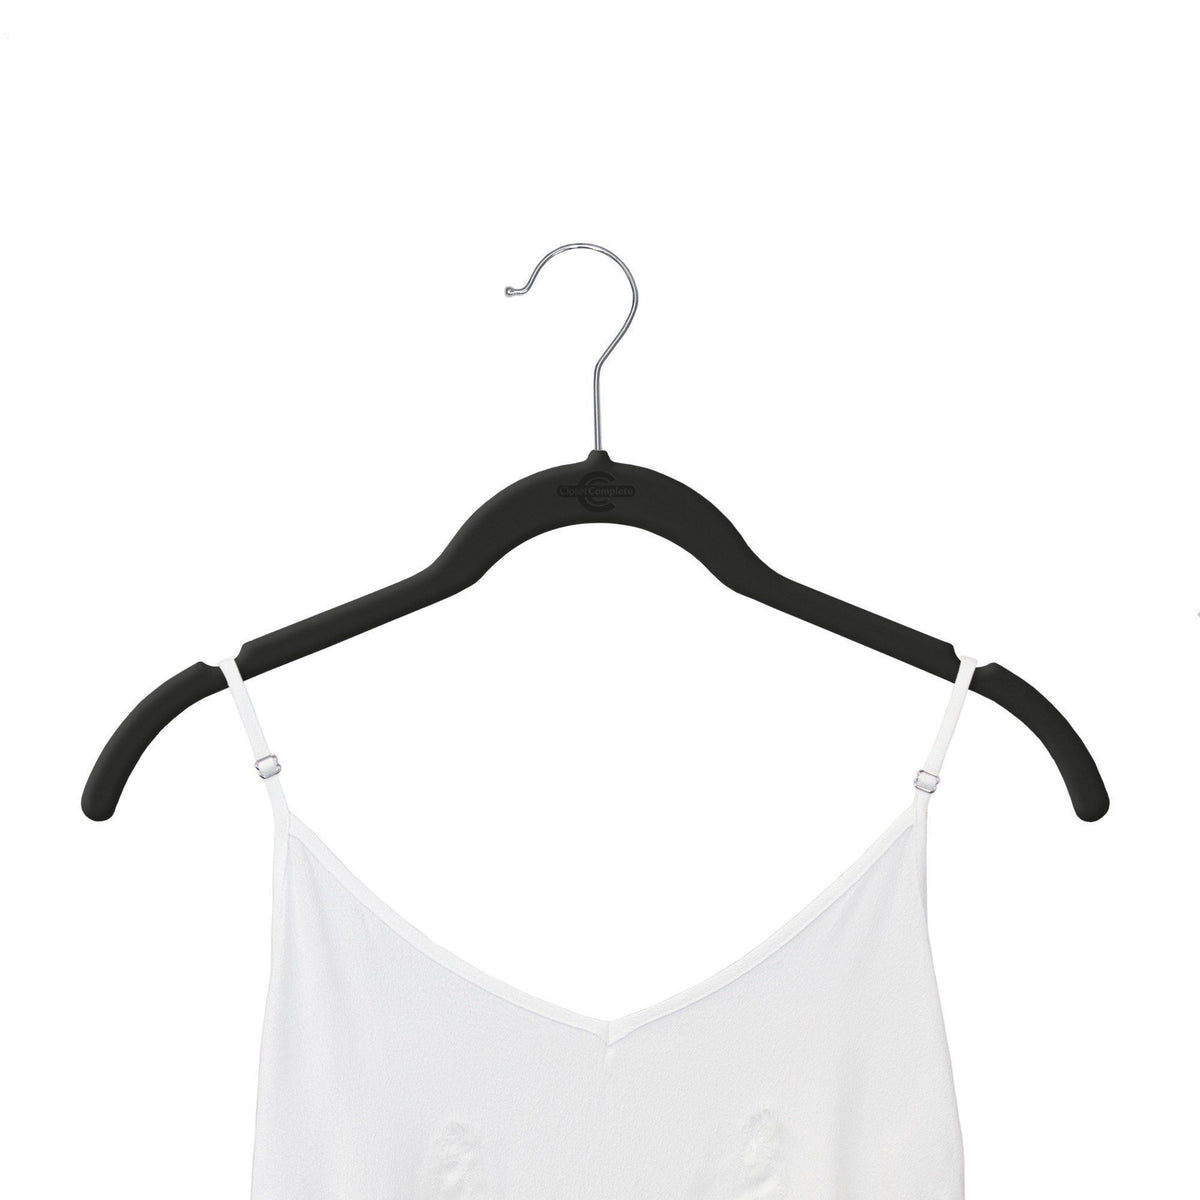 http://www.closetcomplete.com/cdn/shop/products/closet-complete-velvet-hangers-premium-heavyweight-velvet-shirt-dress-hangers-71510-7162887897173_1200x1200.jpg?v=1552516962